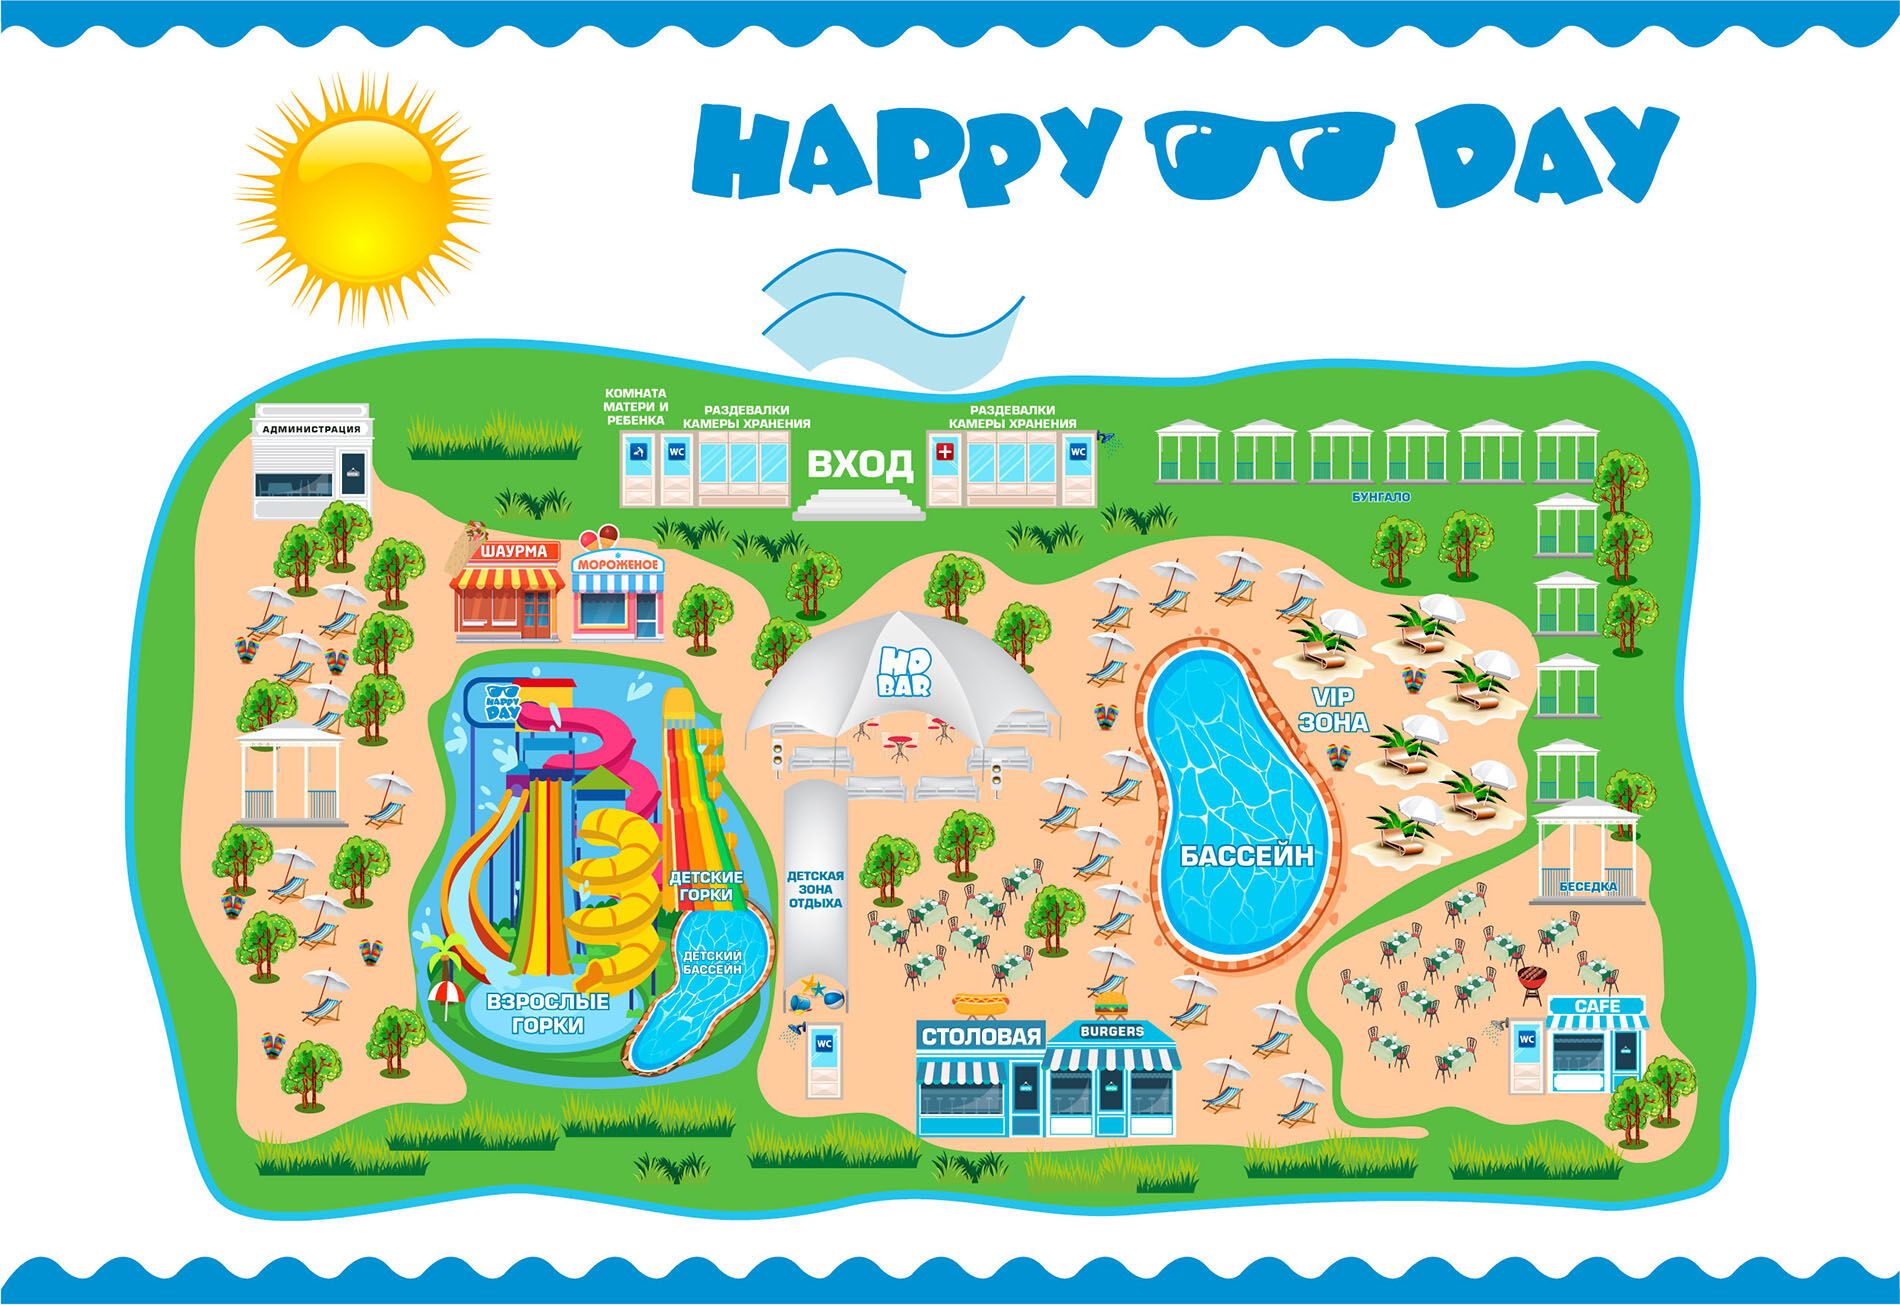 Територія аквапарку "Happy Day"